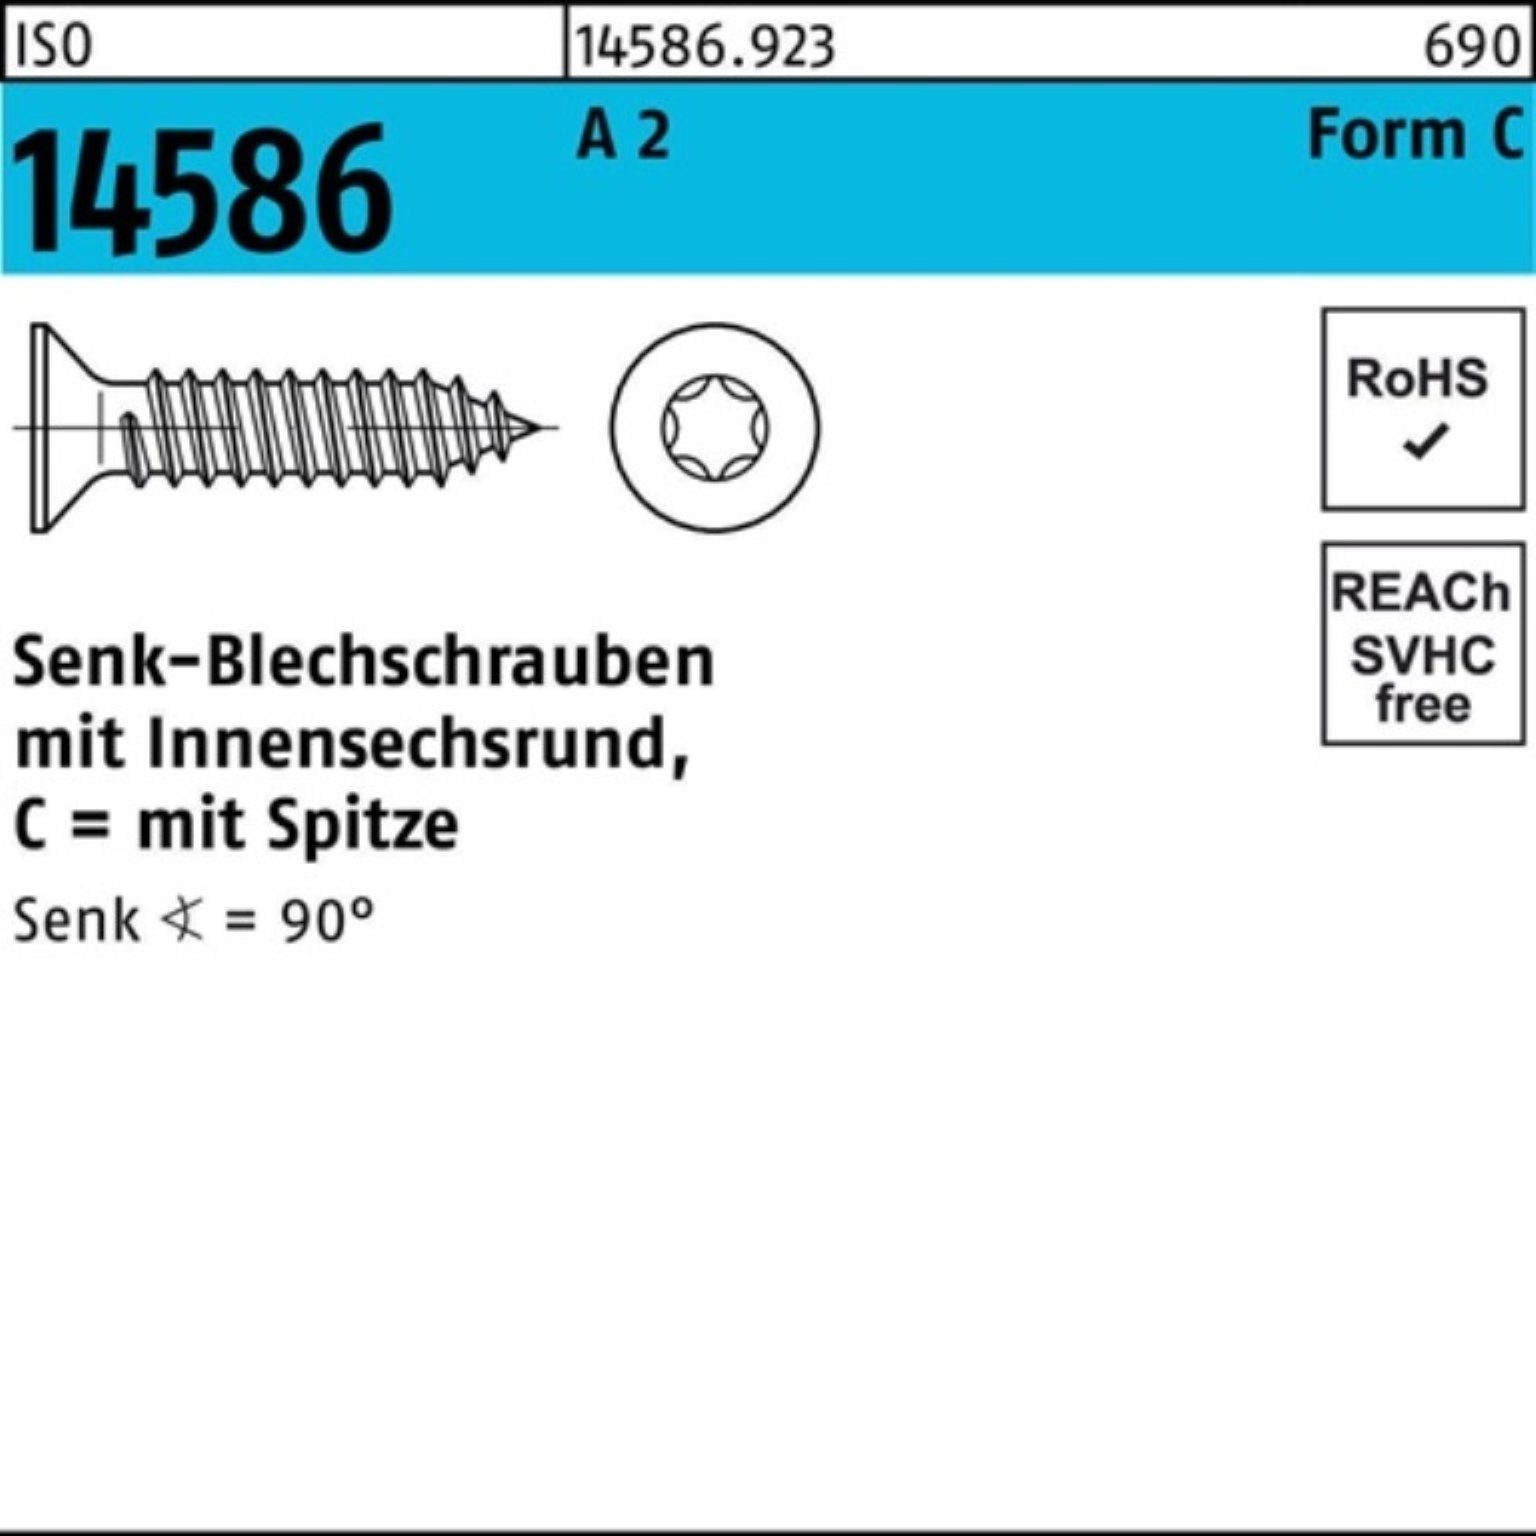 Verkaufsvolumen Reyher Schraube 250er Pack Senkblechschraube ISR/Spitze -C A ISO 80 T25 2 14586 5,5x 2